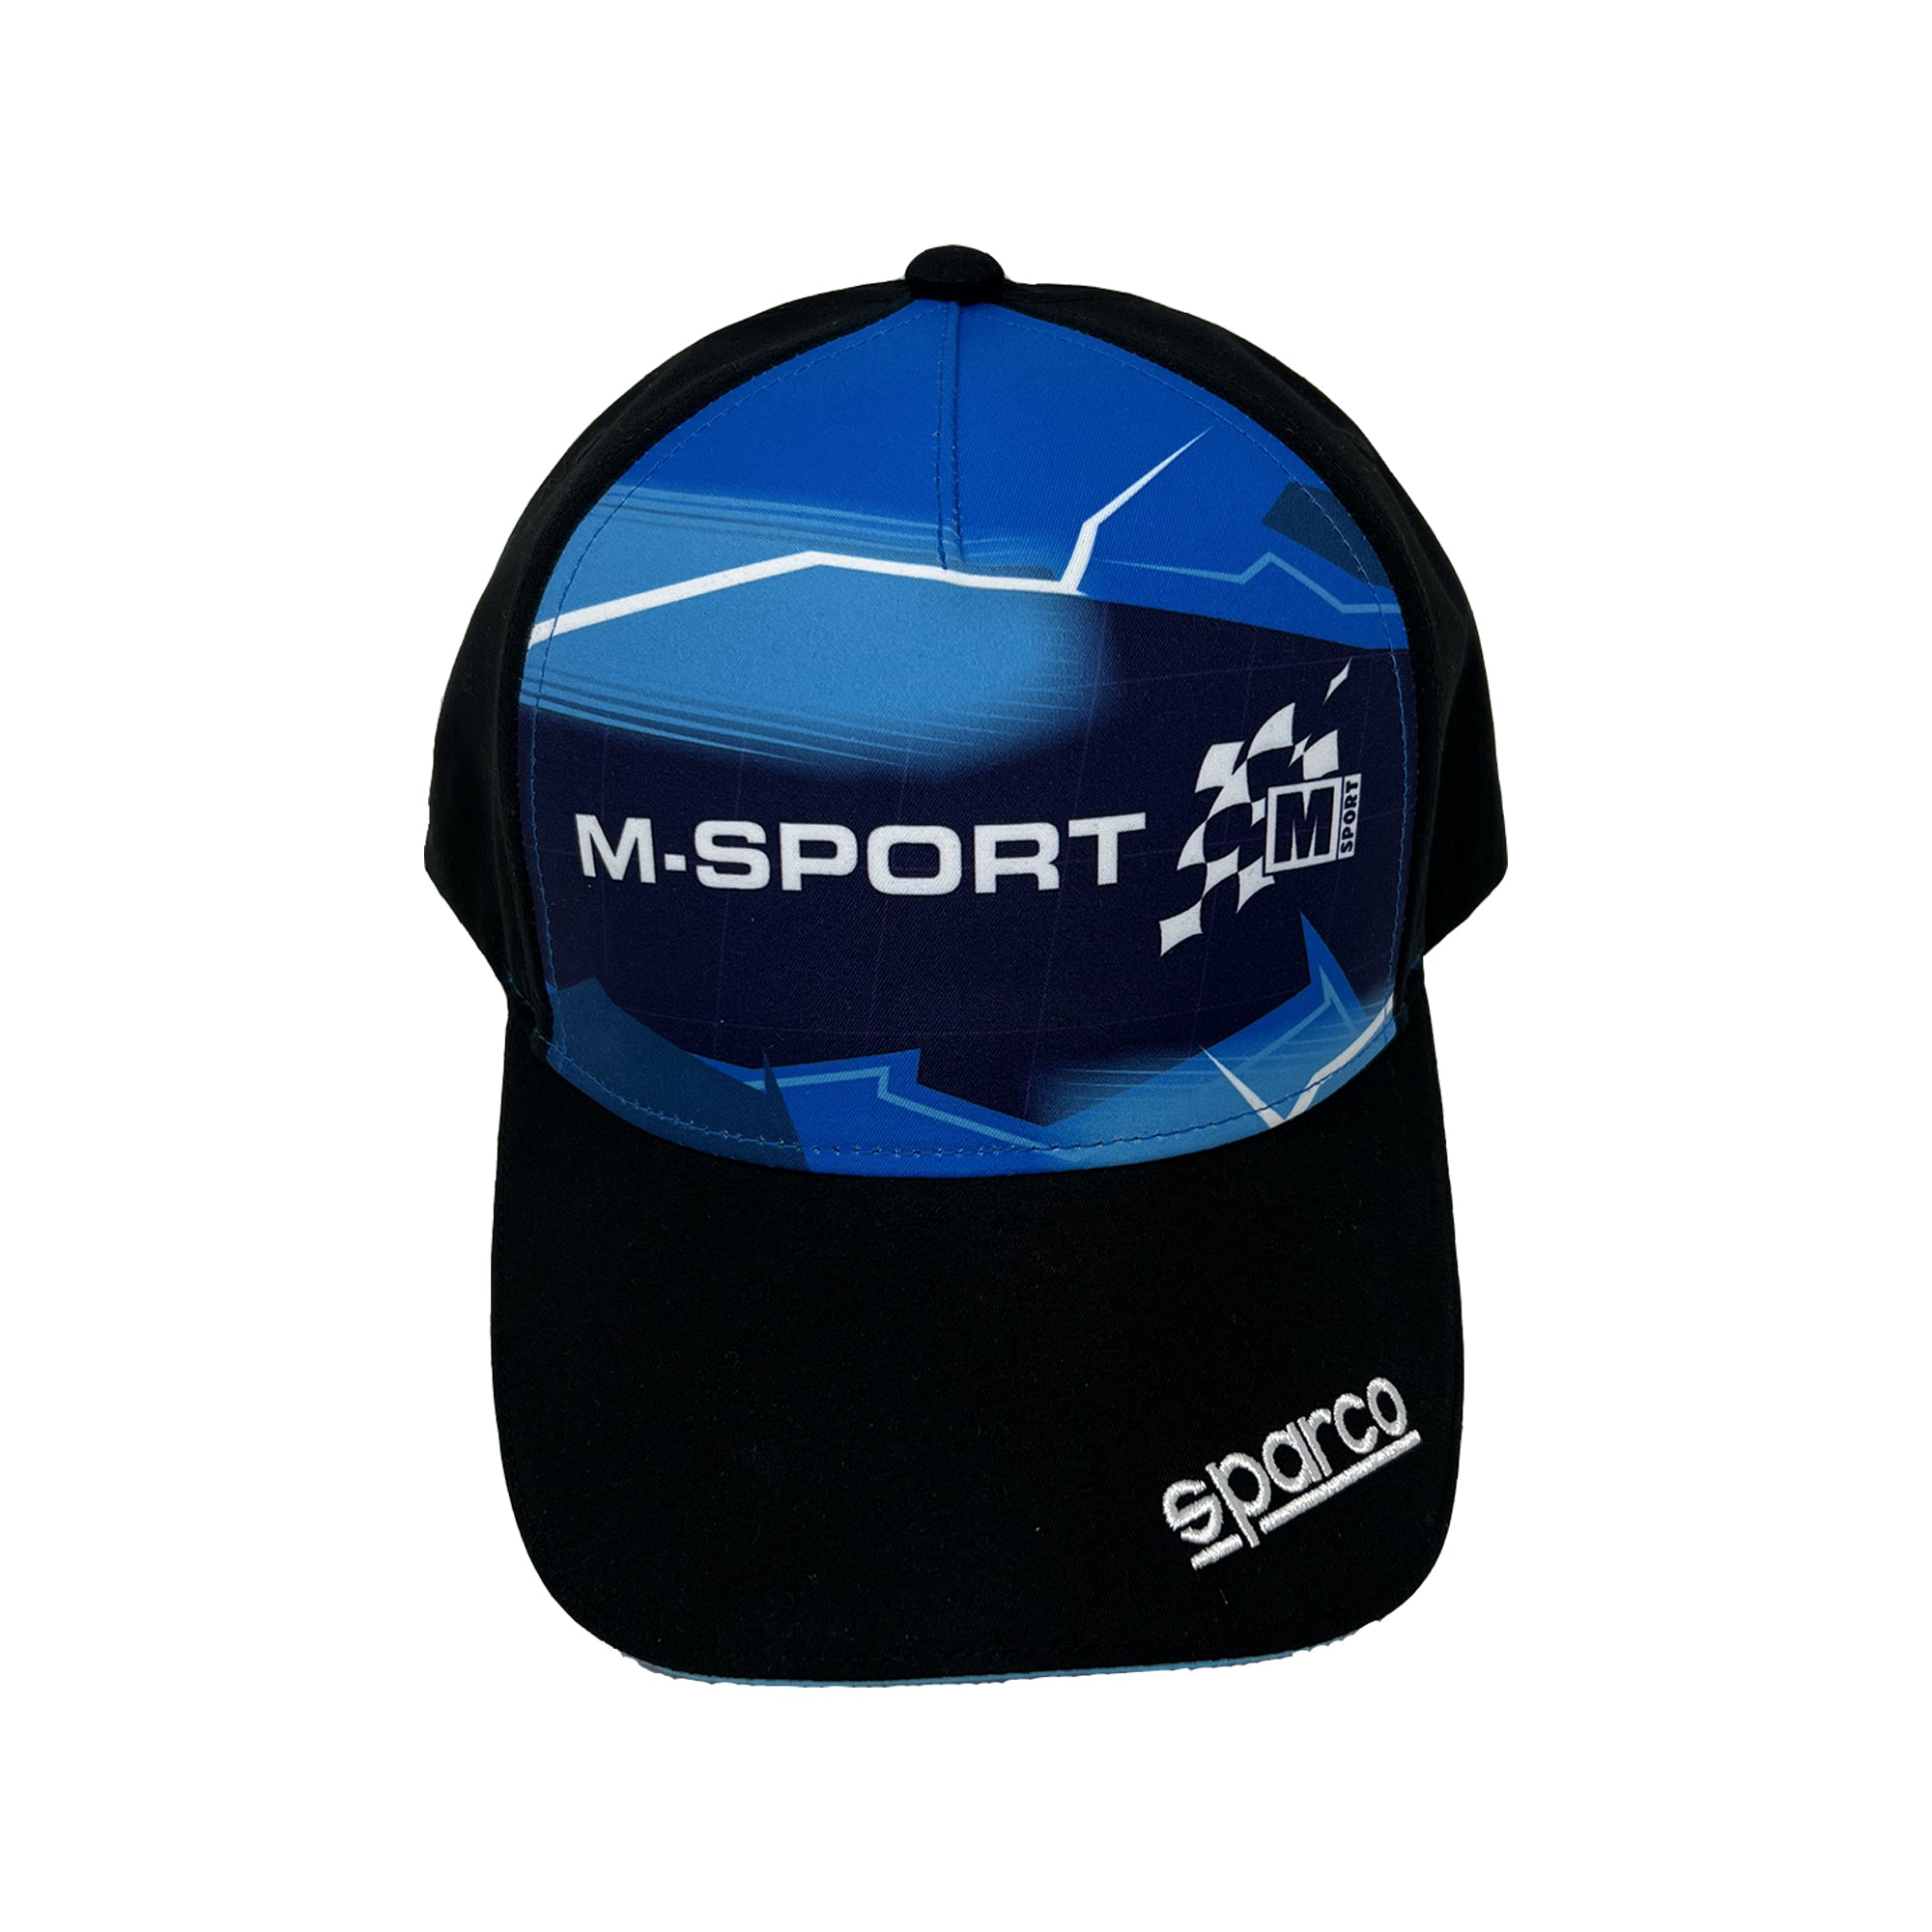 CAP M-SPORT - Sparco Shop